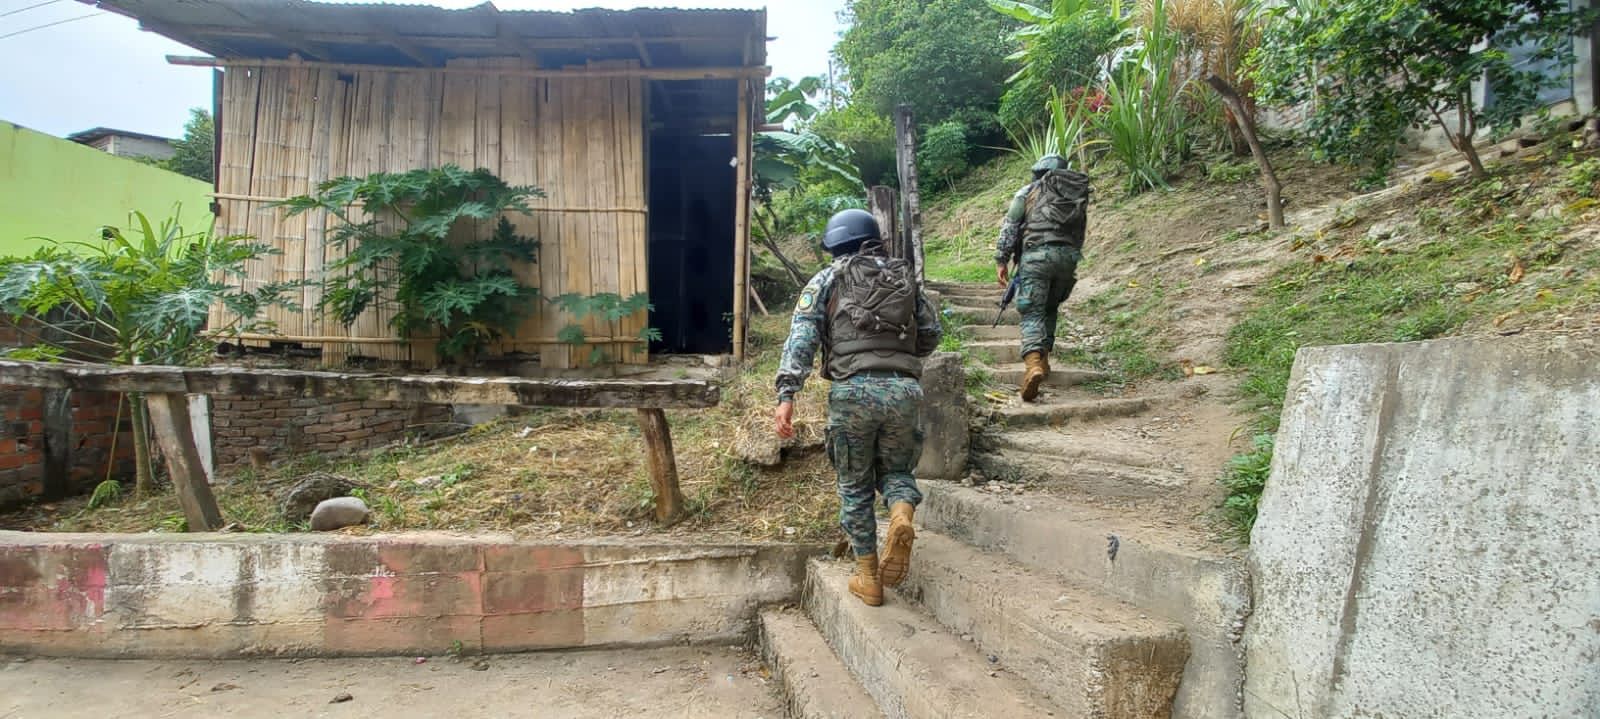 Ecuador golpea al narcotráfico y delincuencia en la frontera con Colombia